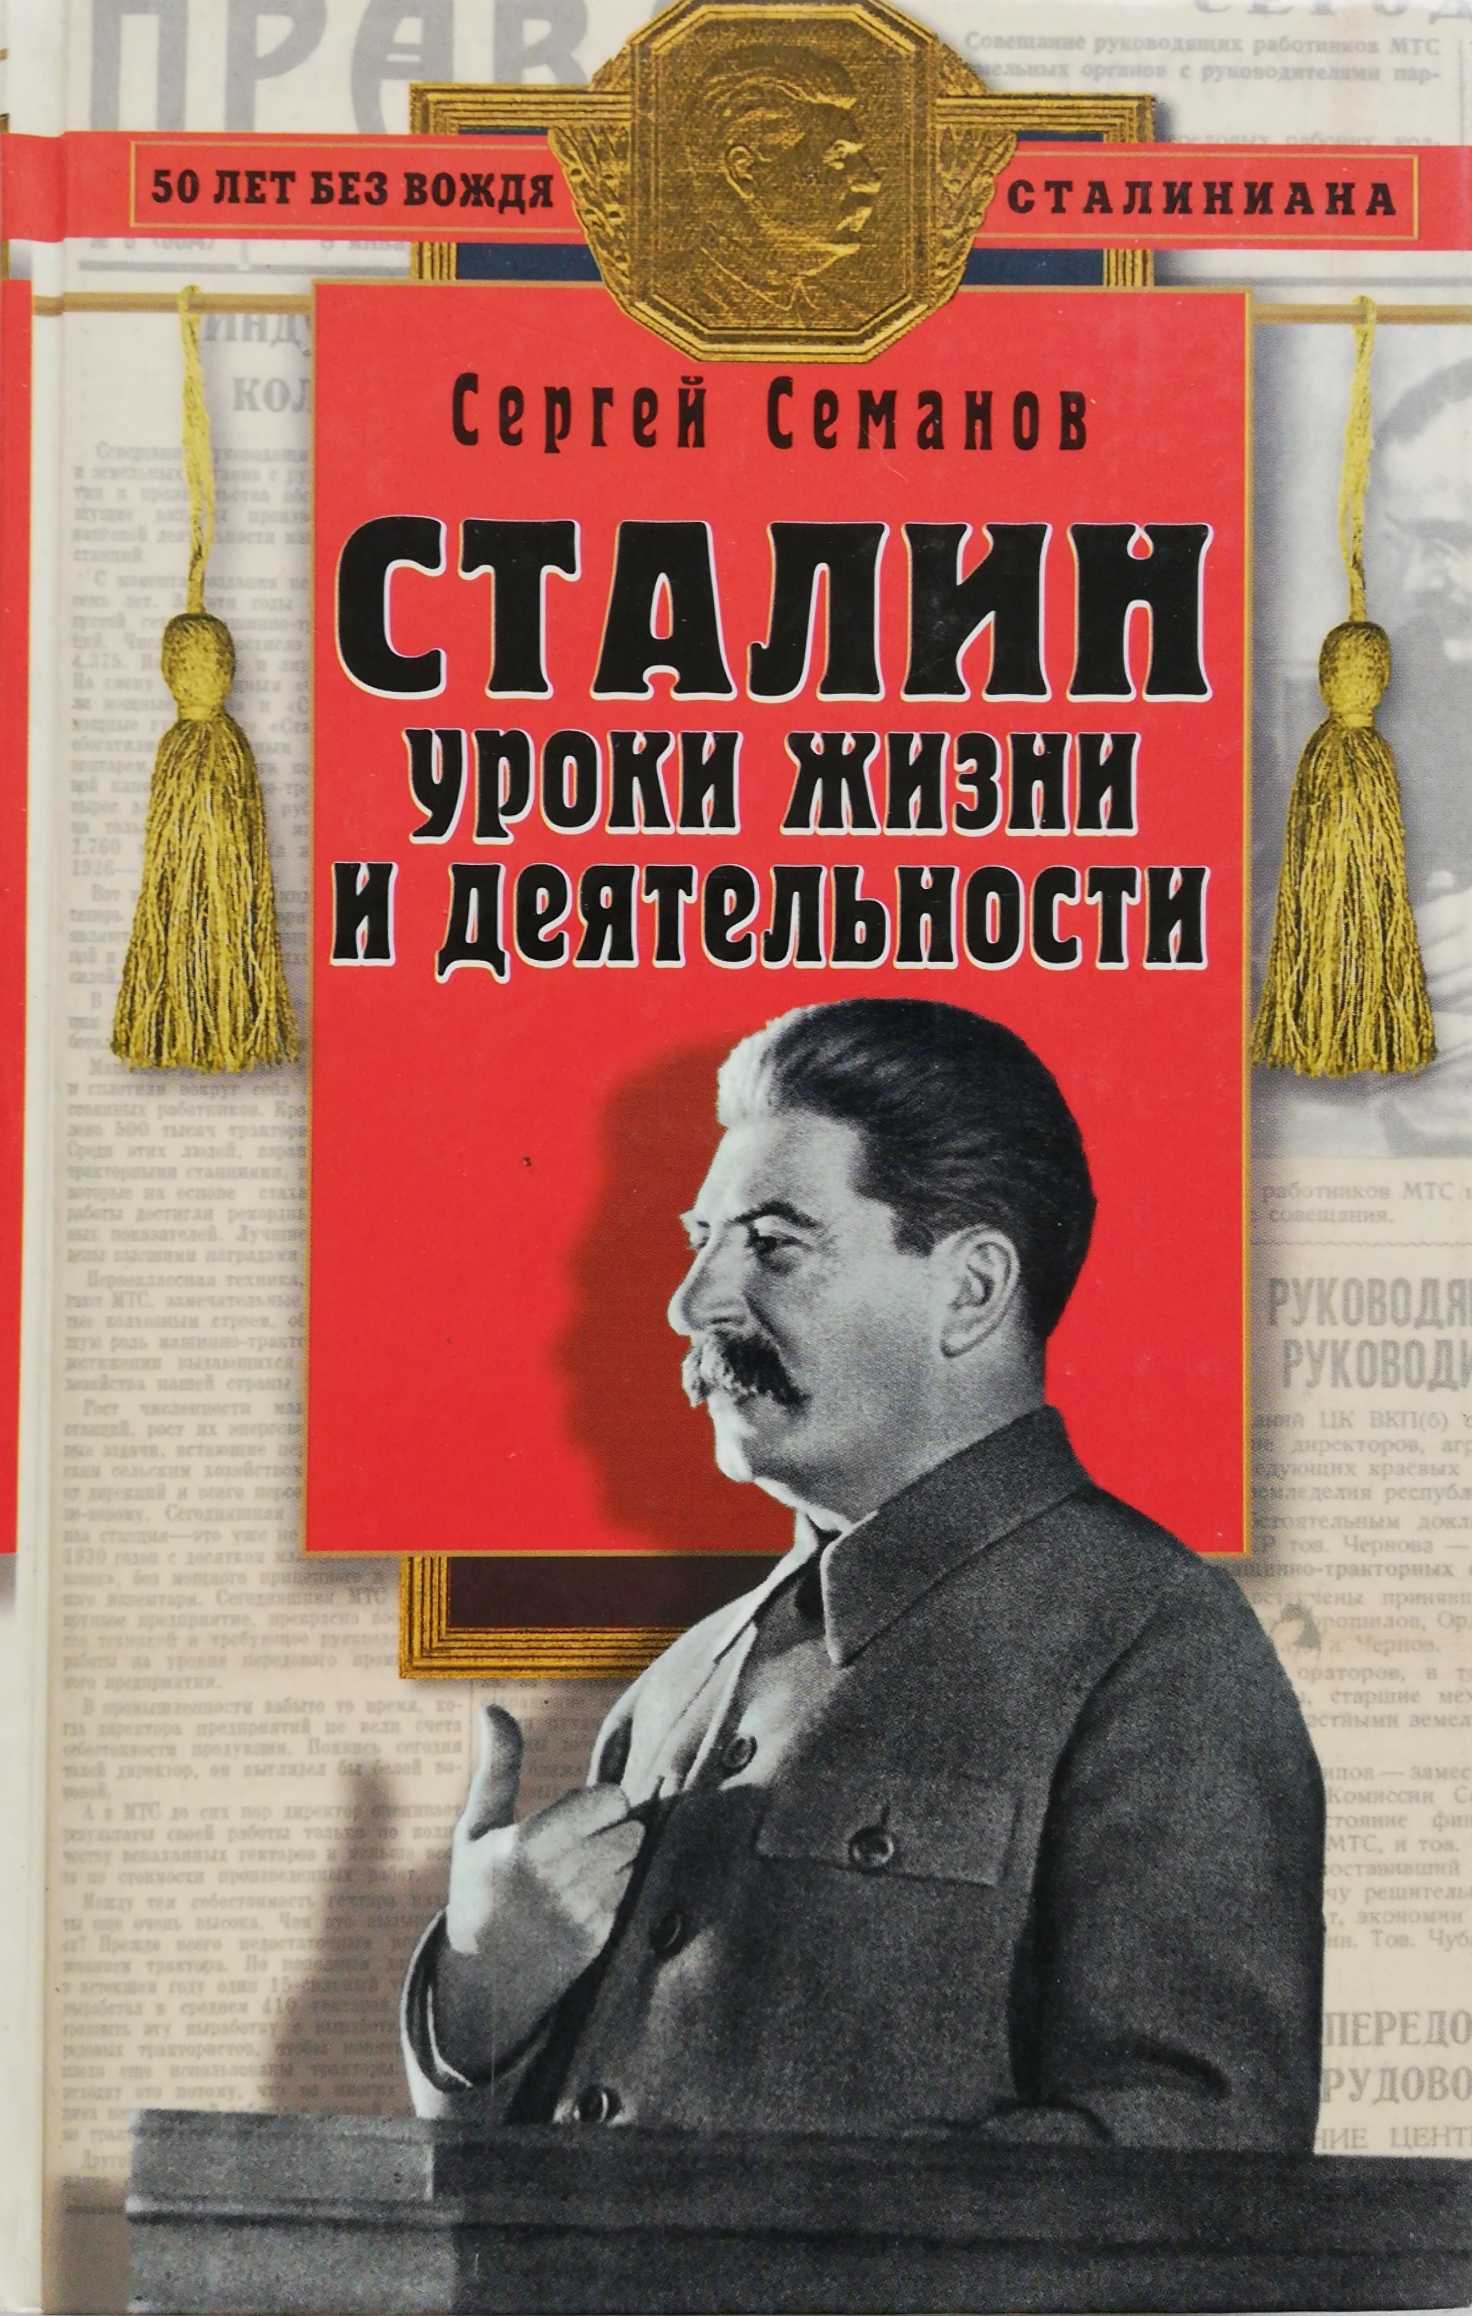 Сталинские книги купить. Сталин книга. Произведения о Сталине. Обложка книги Сталин. Сталин уроки жизни и деятельности.